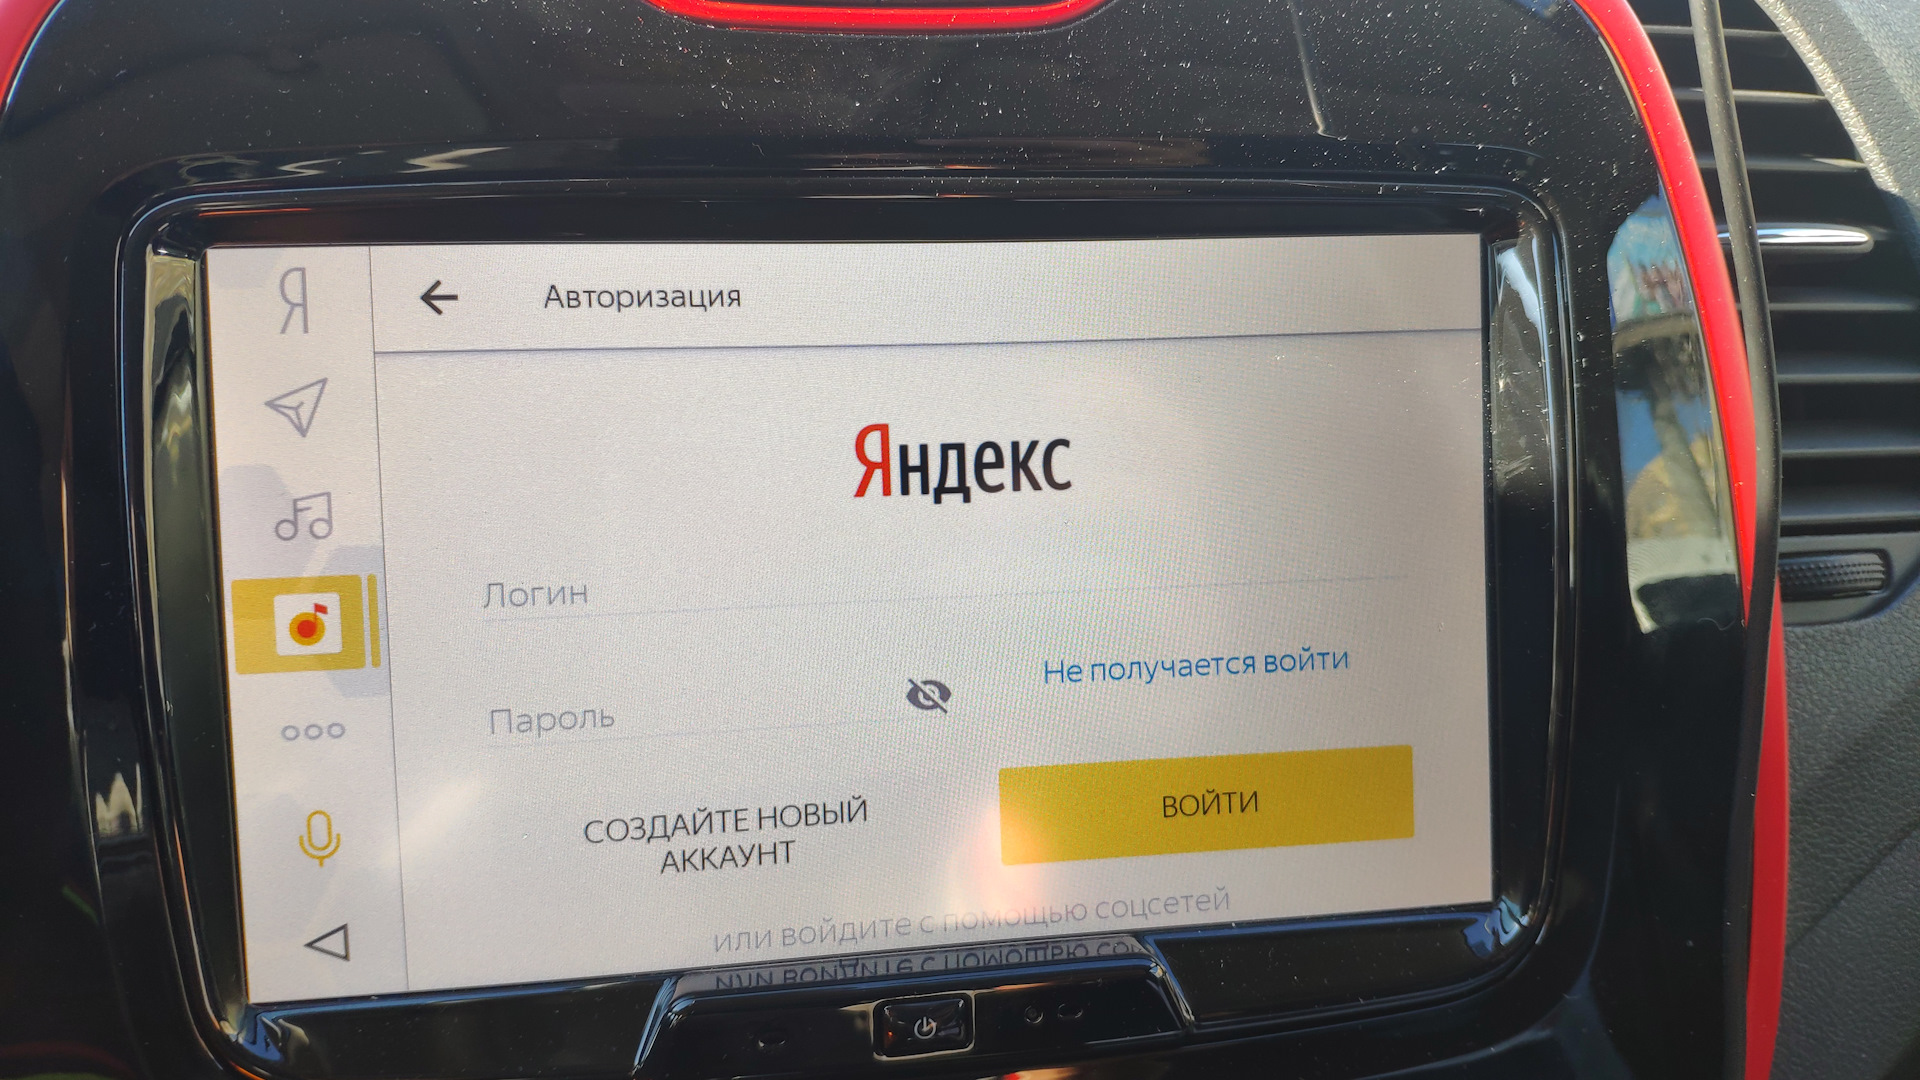 Авторизация в яндексе открыть. Авторизоваться в Яндексе.